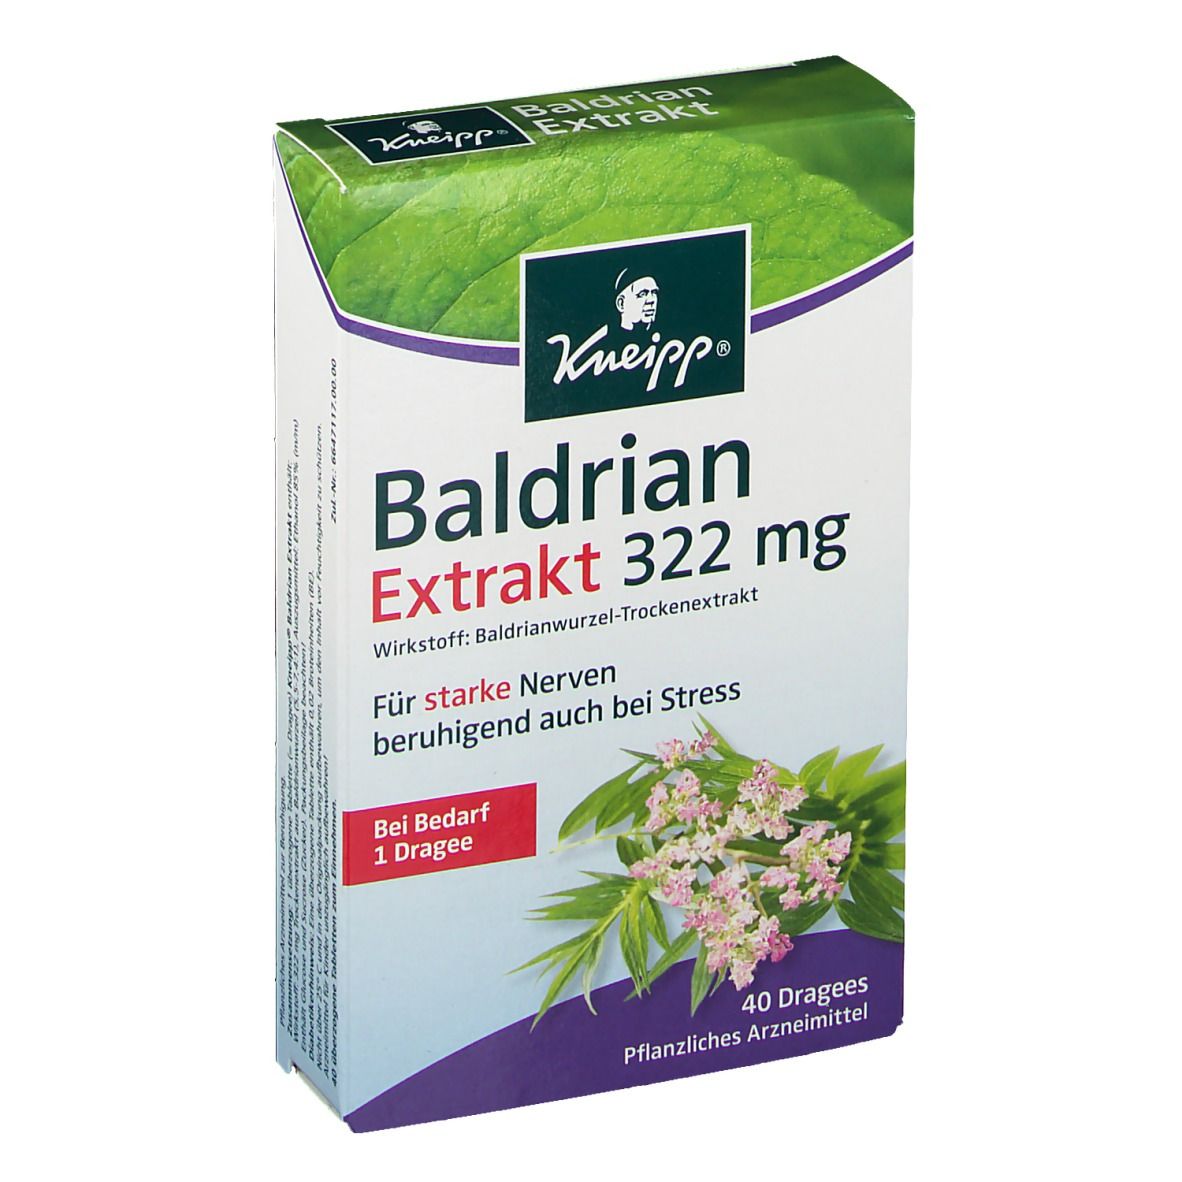 Kneipp® Baldrian Extrakt